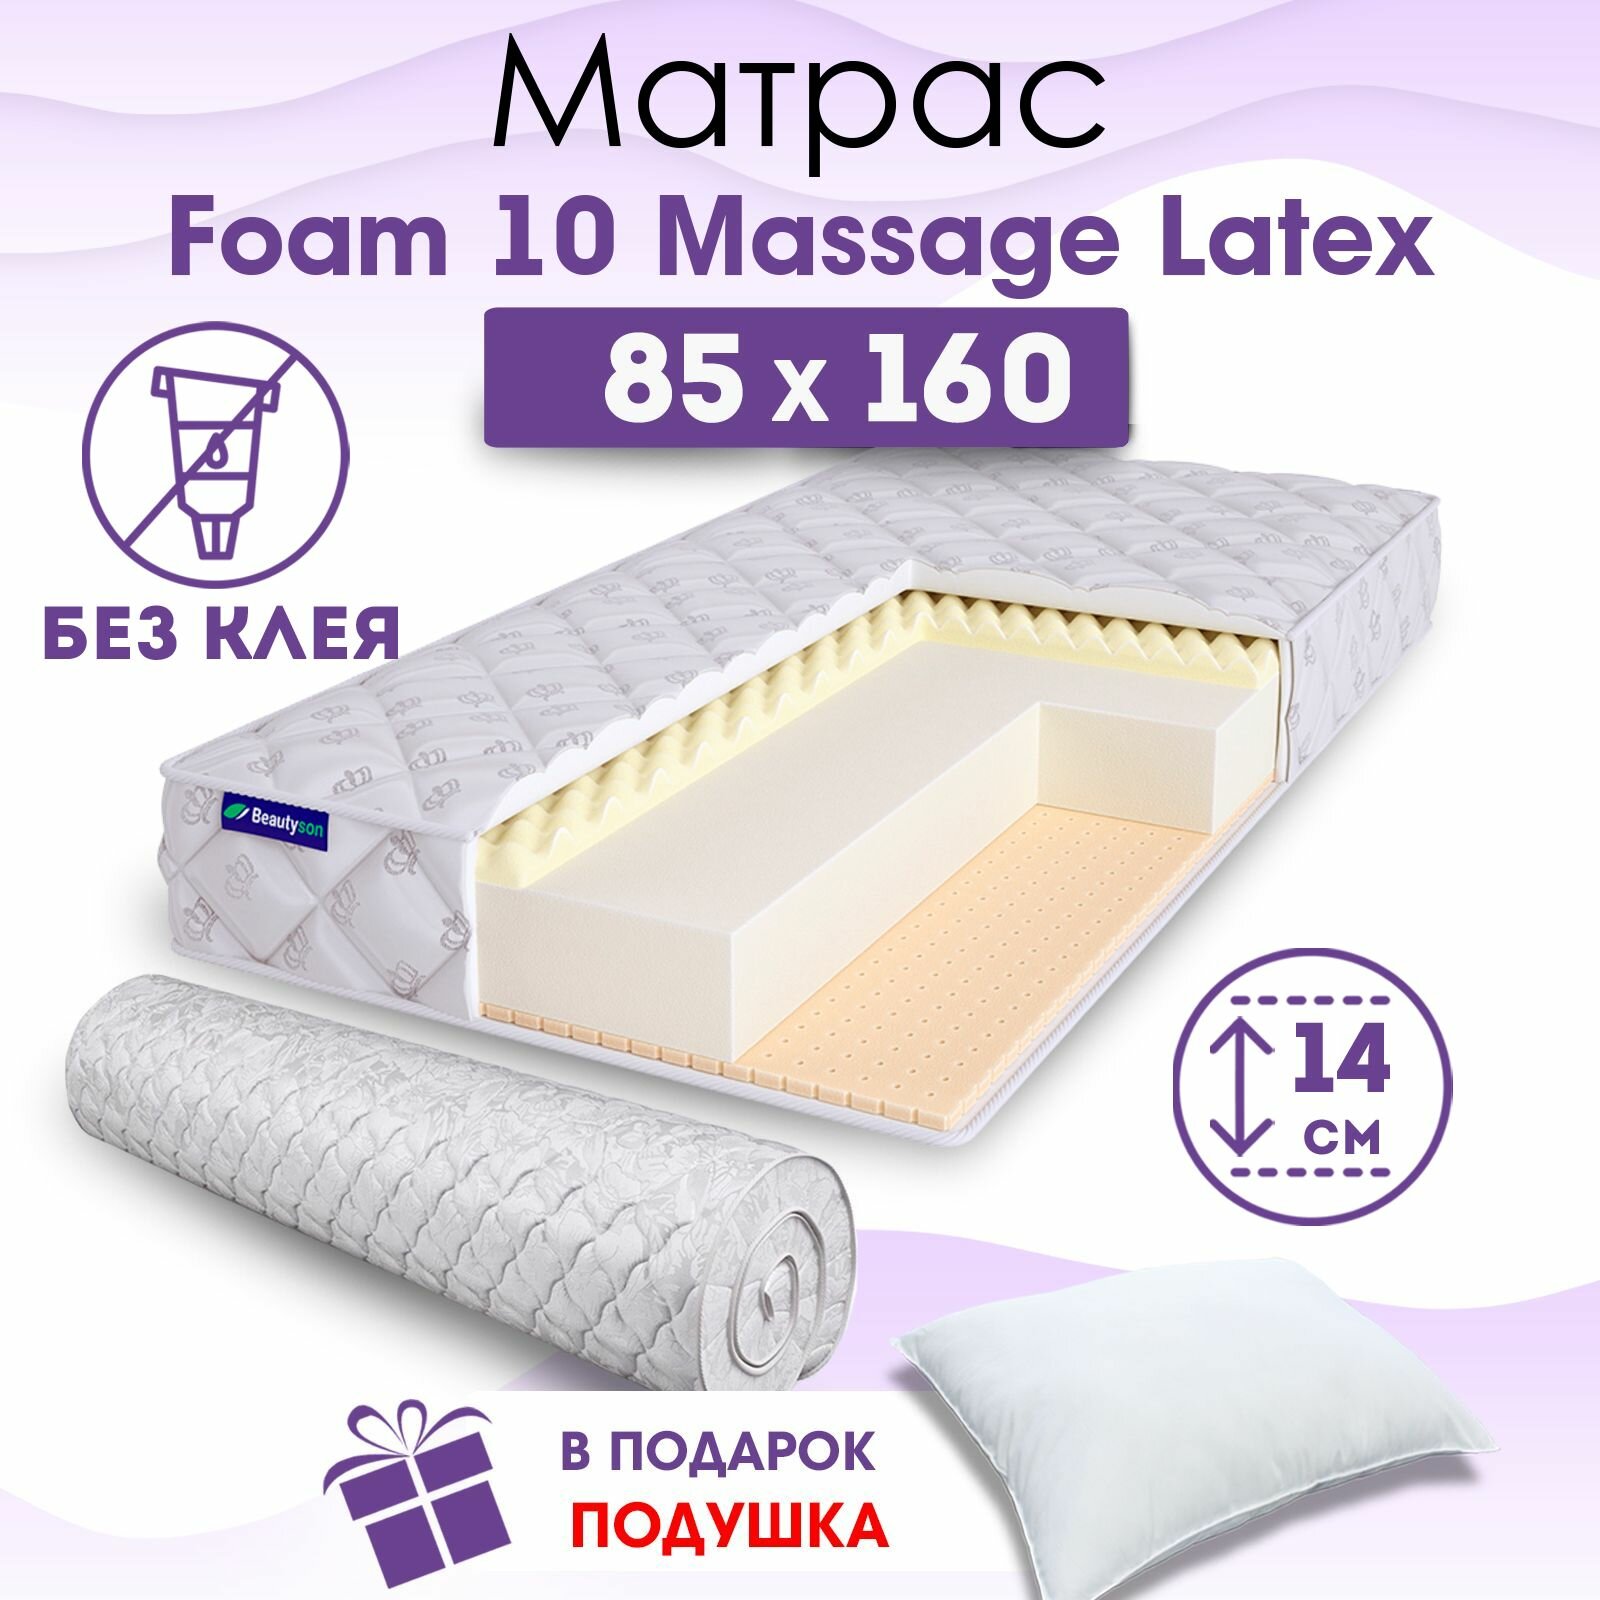 Ортопедический матрас Beautyson Foam 10 Massage Latex без клея, 85х160, 14 см, беспружинный, односпальный, на кровать, для дивана, мягкий, не высокий